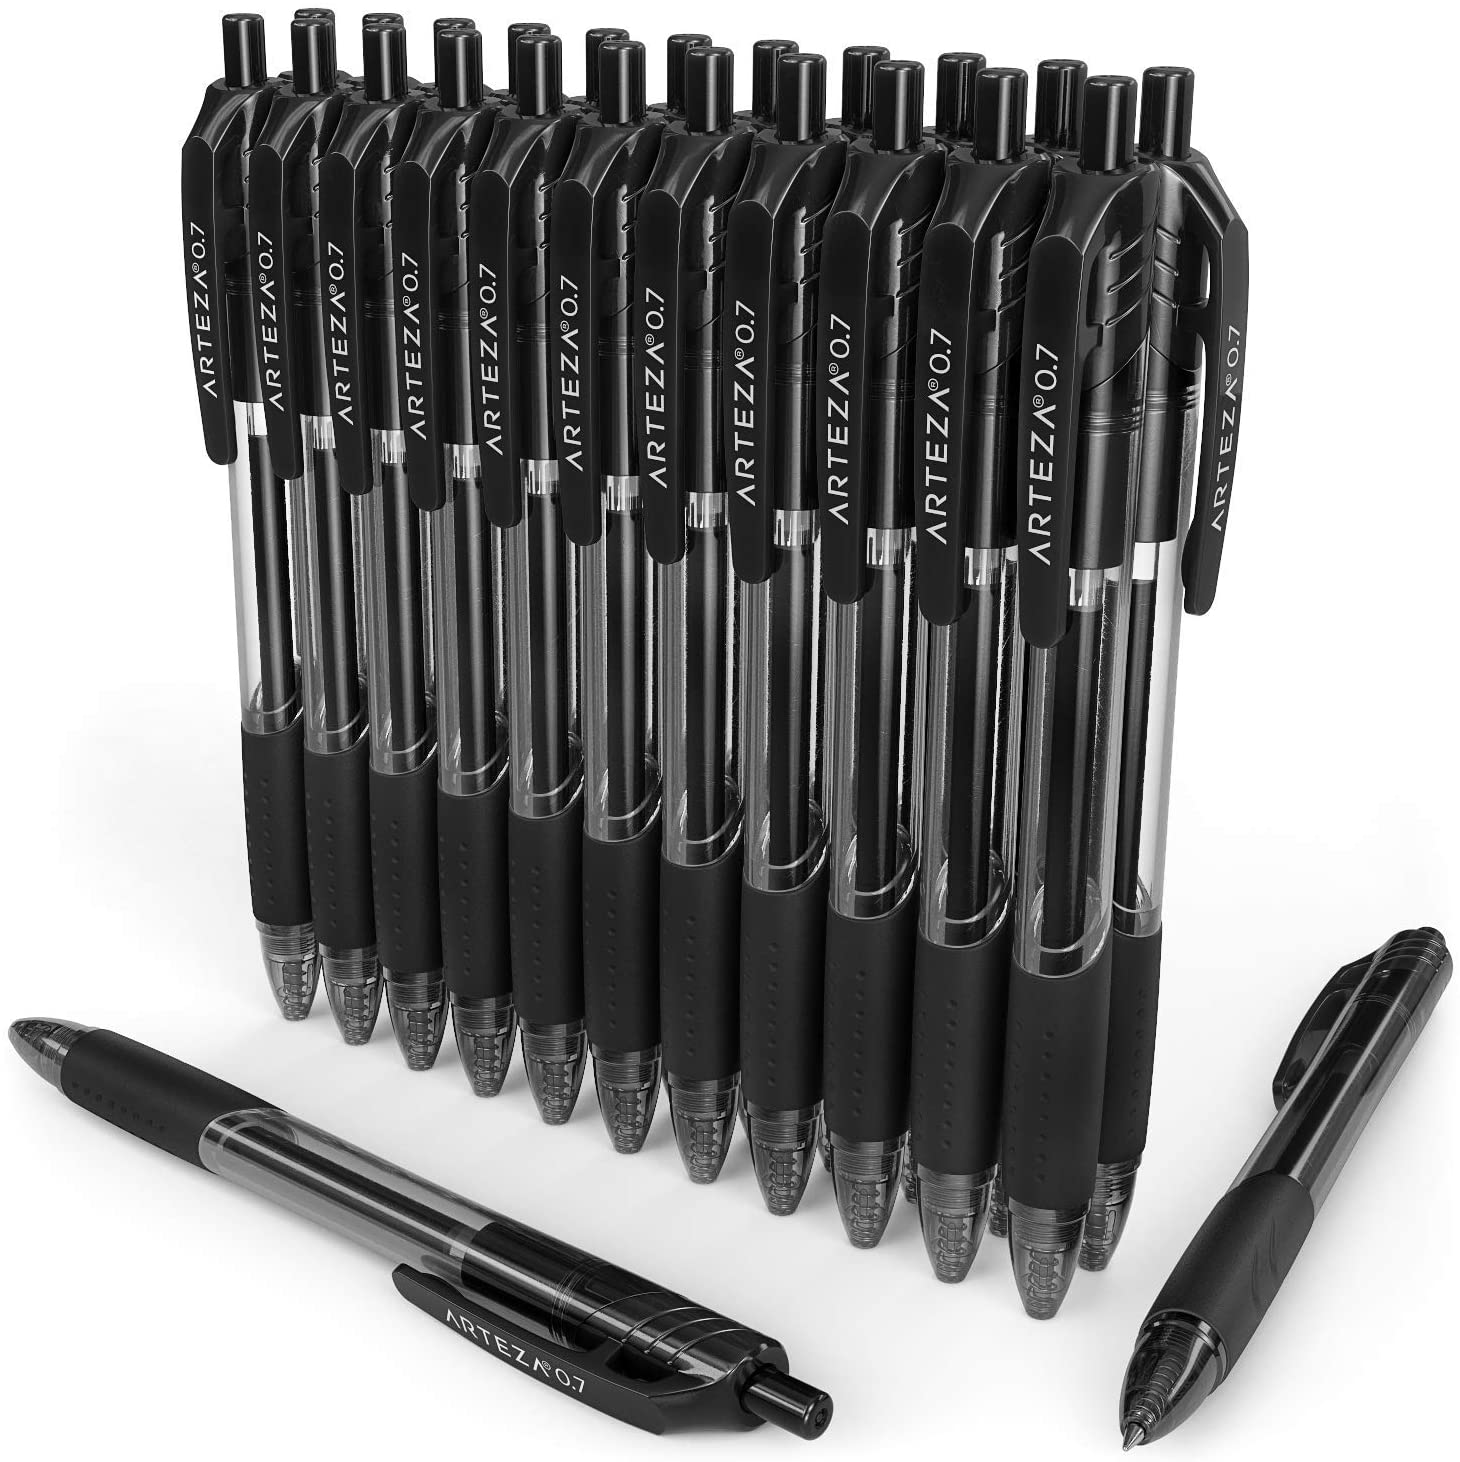 https://arteza.com/cdn/shop/products/retractable-black-gel-ink-pens-set-of-24_JPpQhi1x.jpg?v=1652890633&width=1946